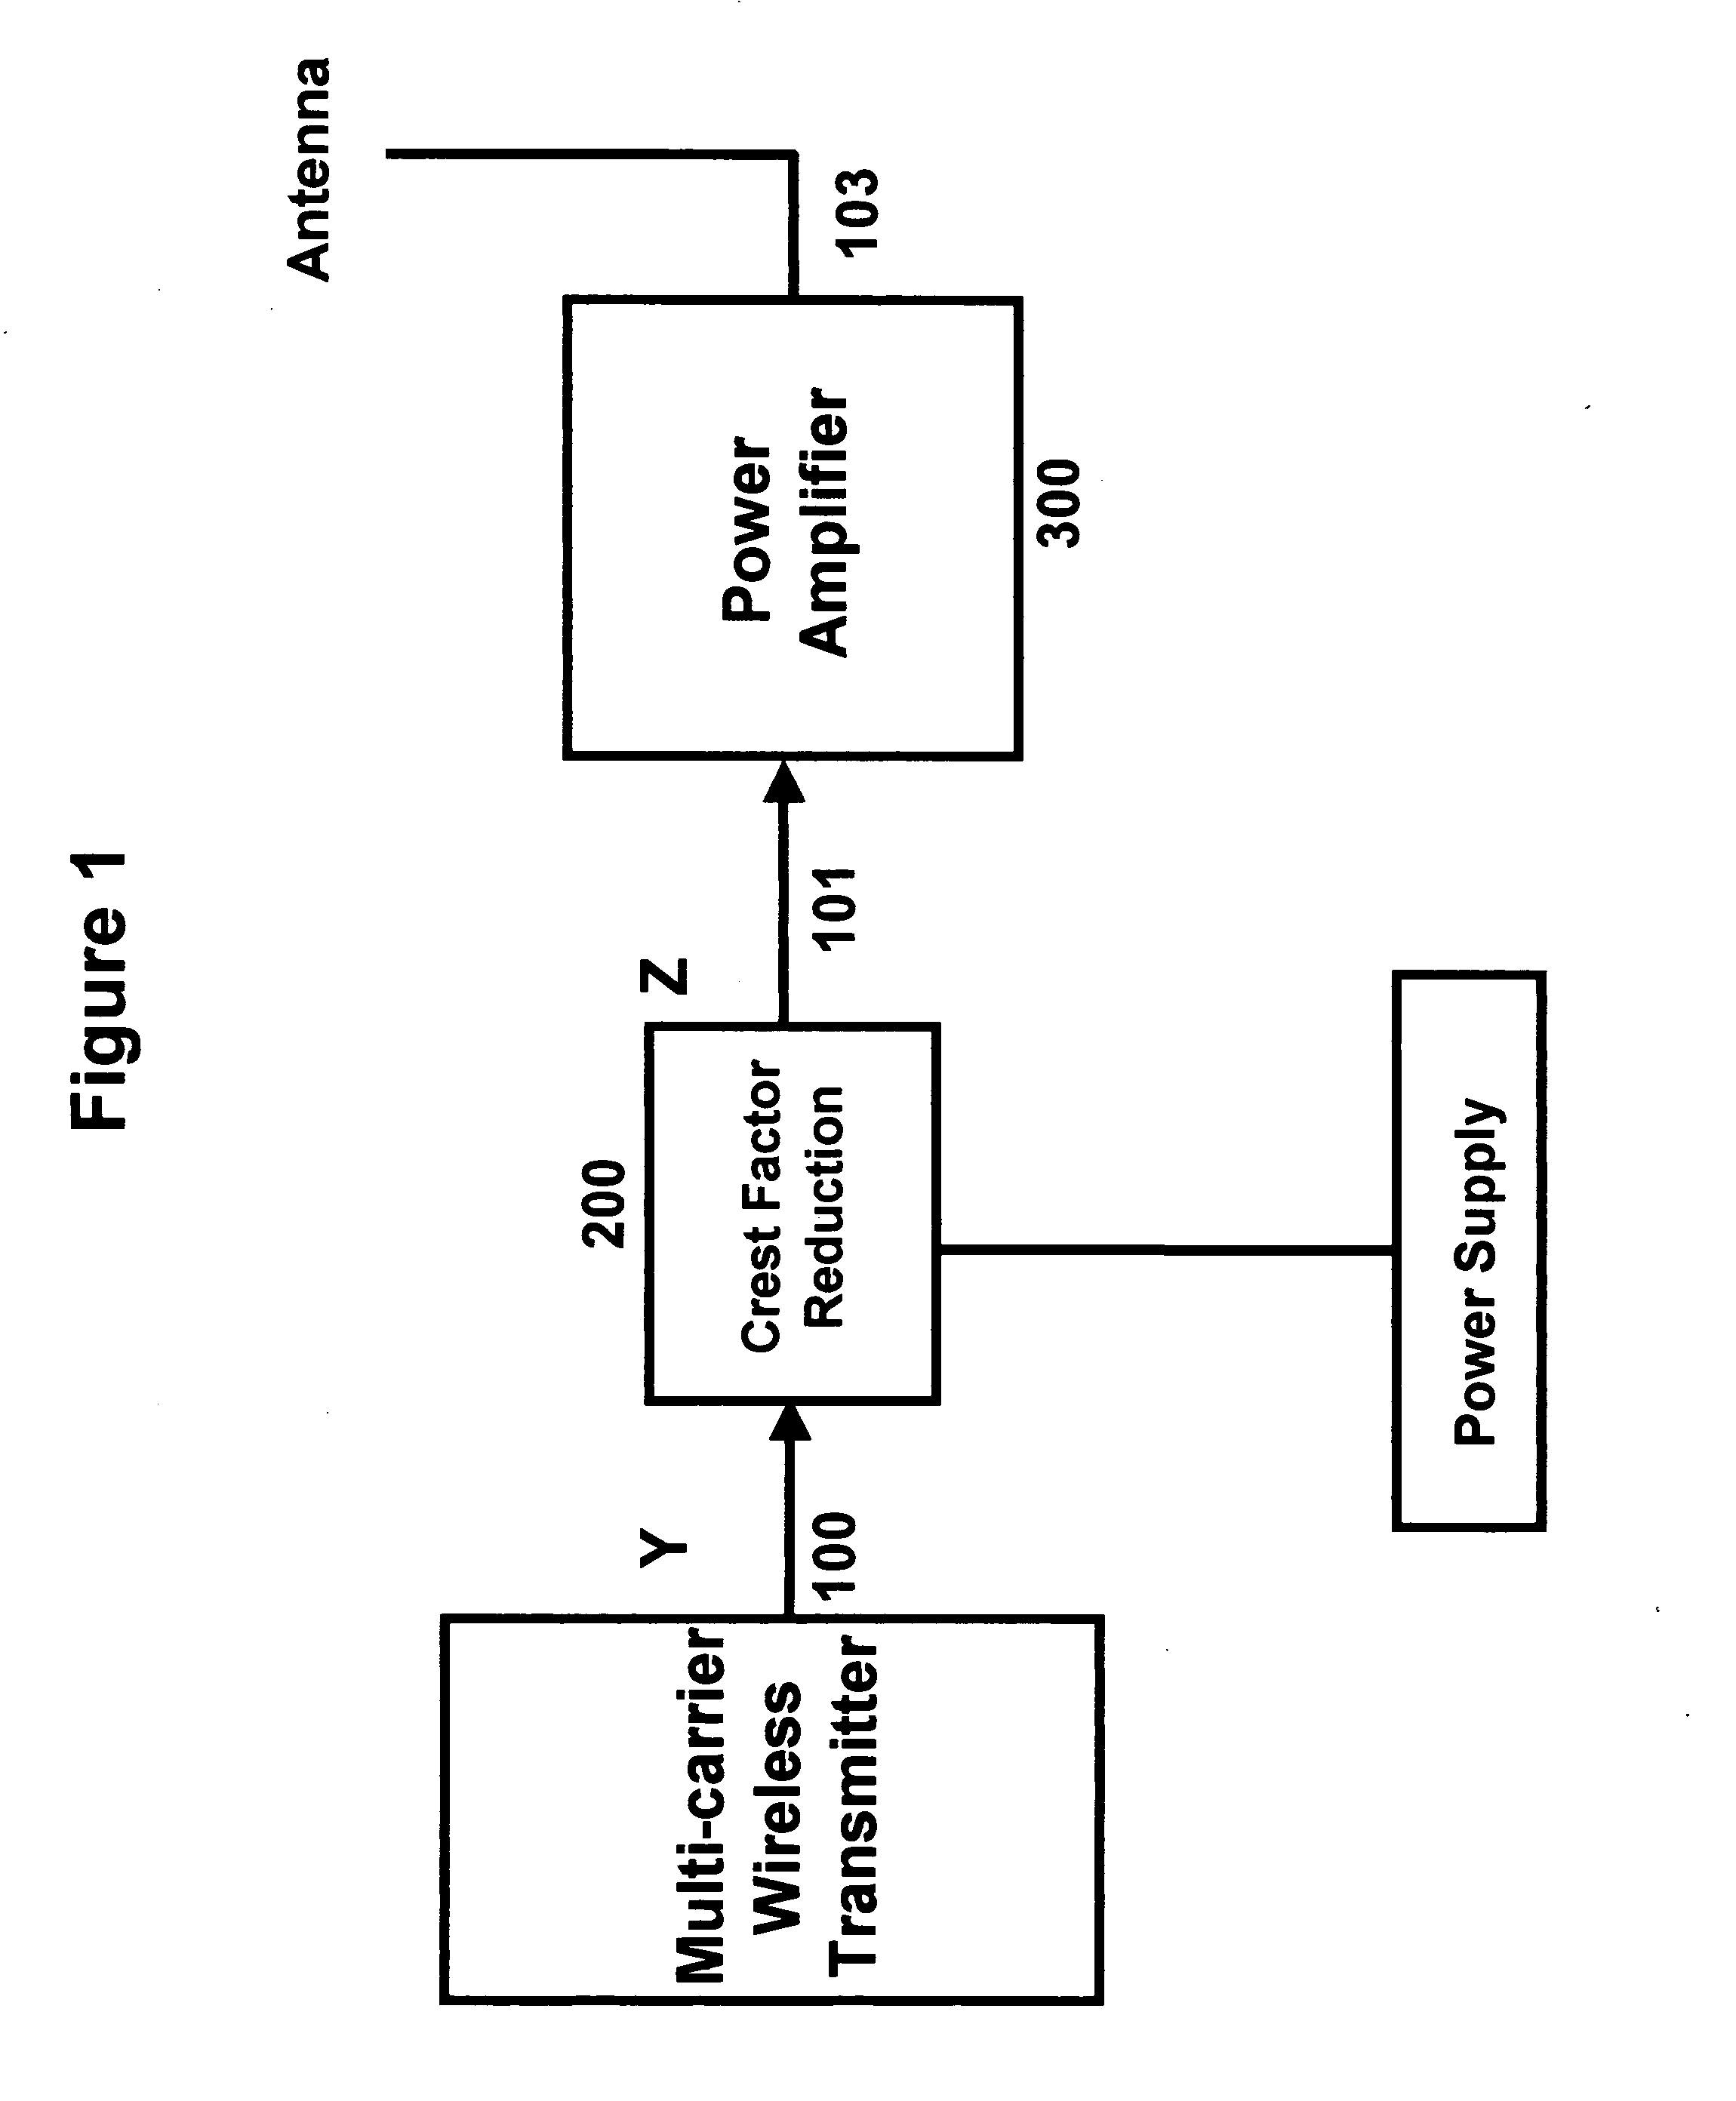 Simple crest factor reduction technique for non-constant envelope signals